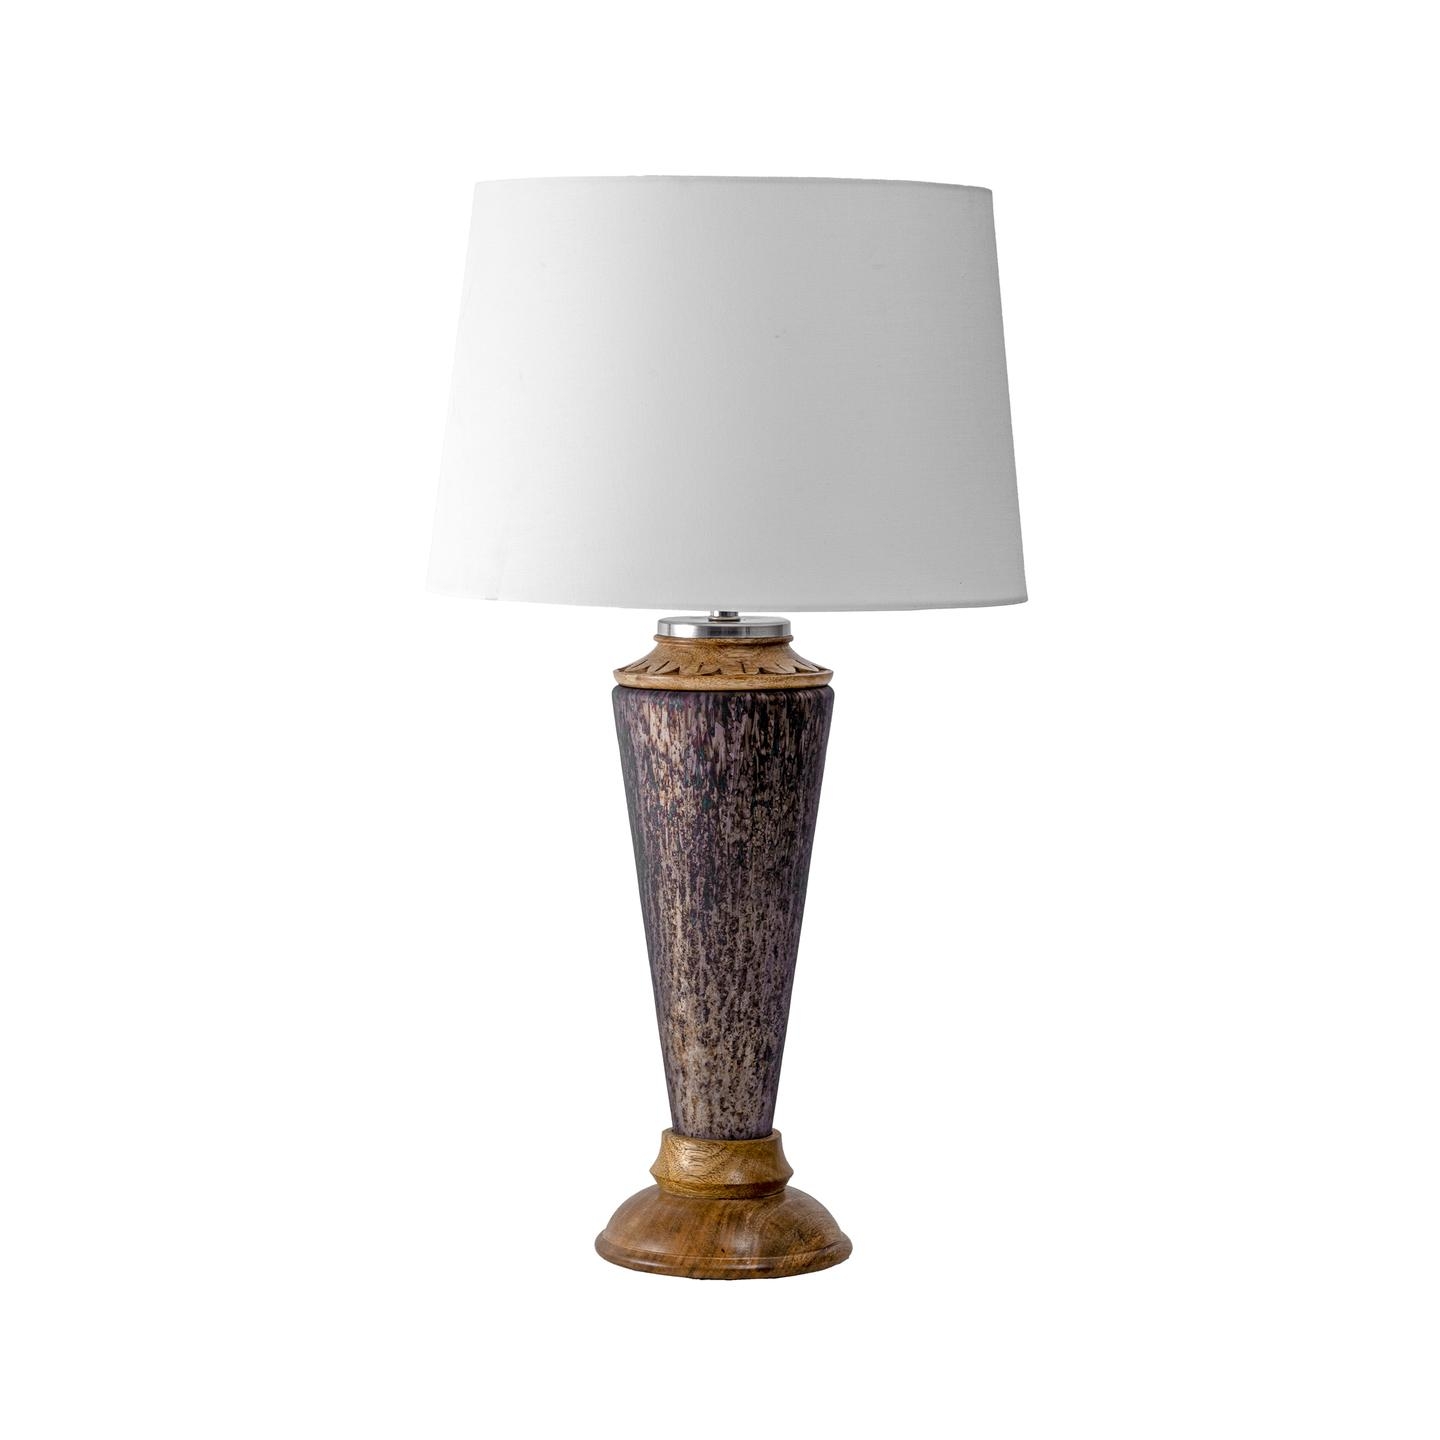 Novato 25" Wood Table Lamp - Image 2